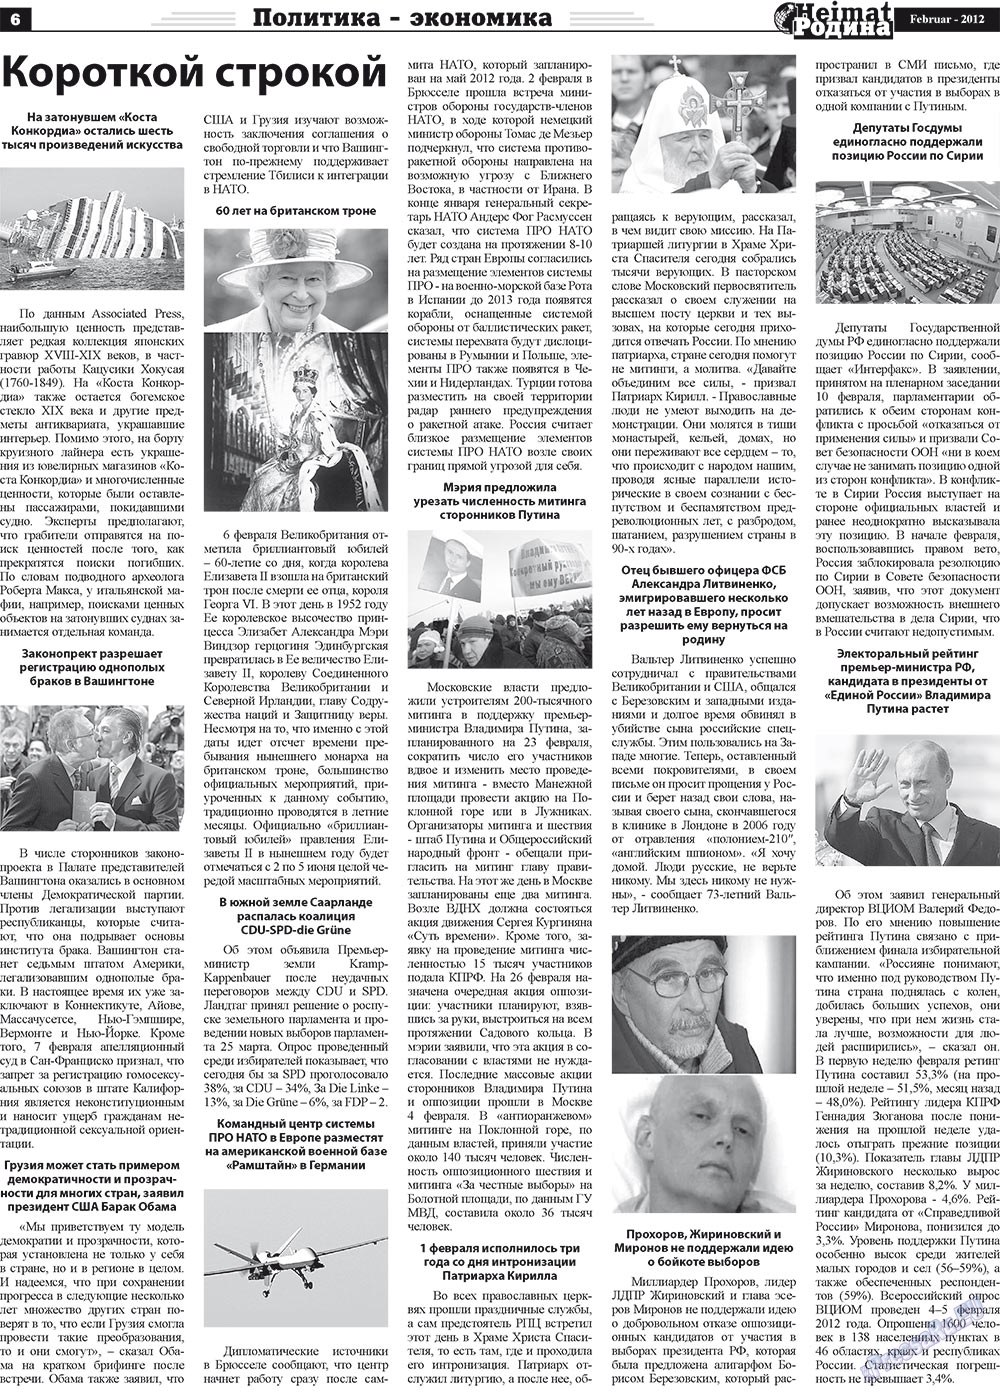 Heimat-Родина (газета). 2012 год, номер 2, стр. 6